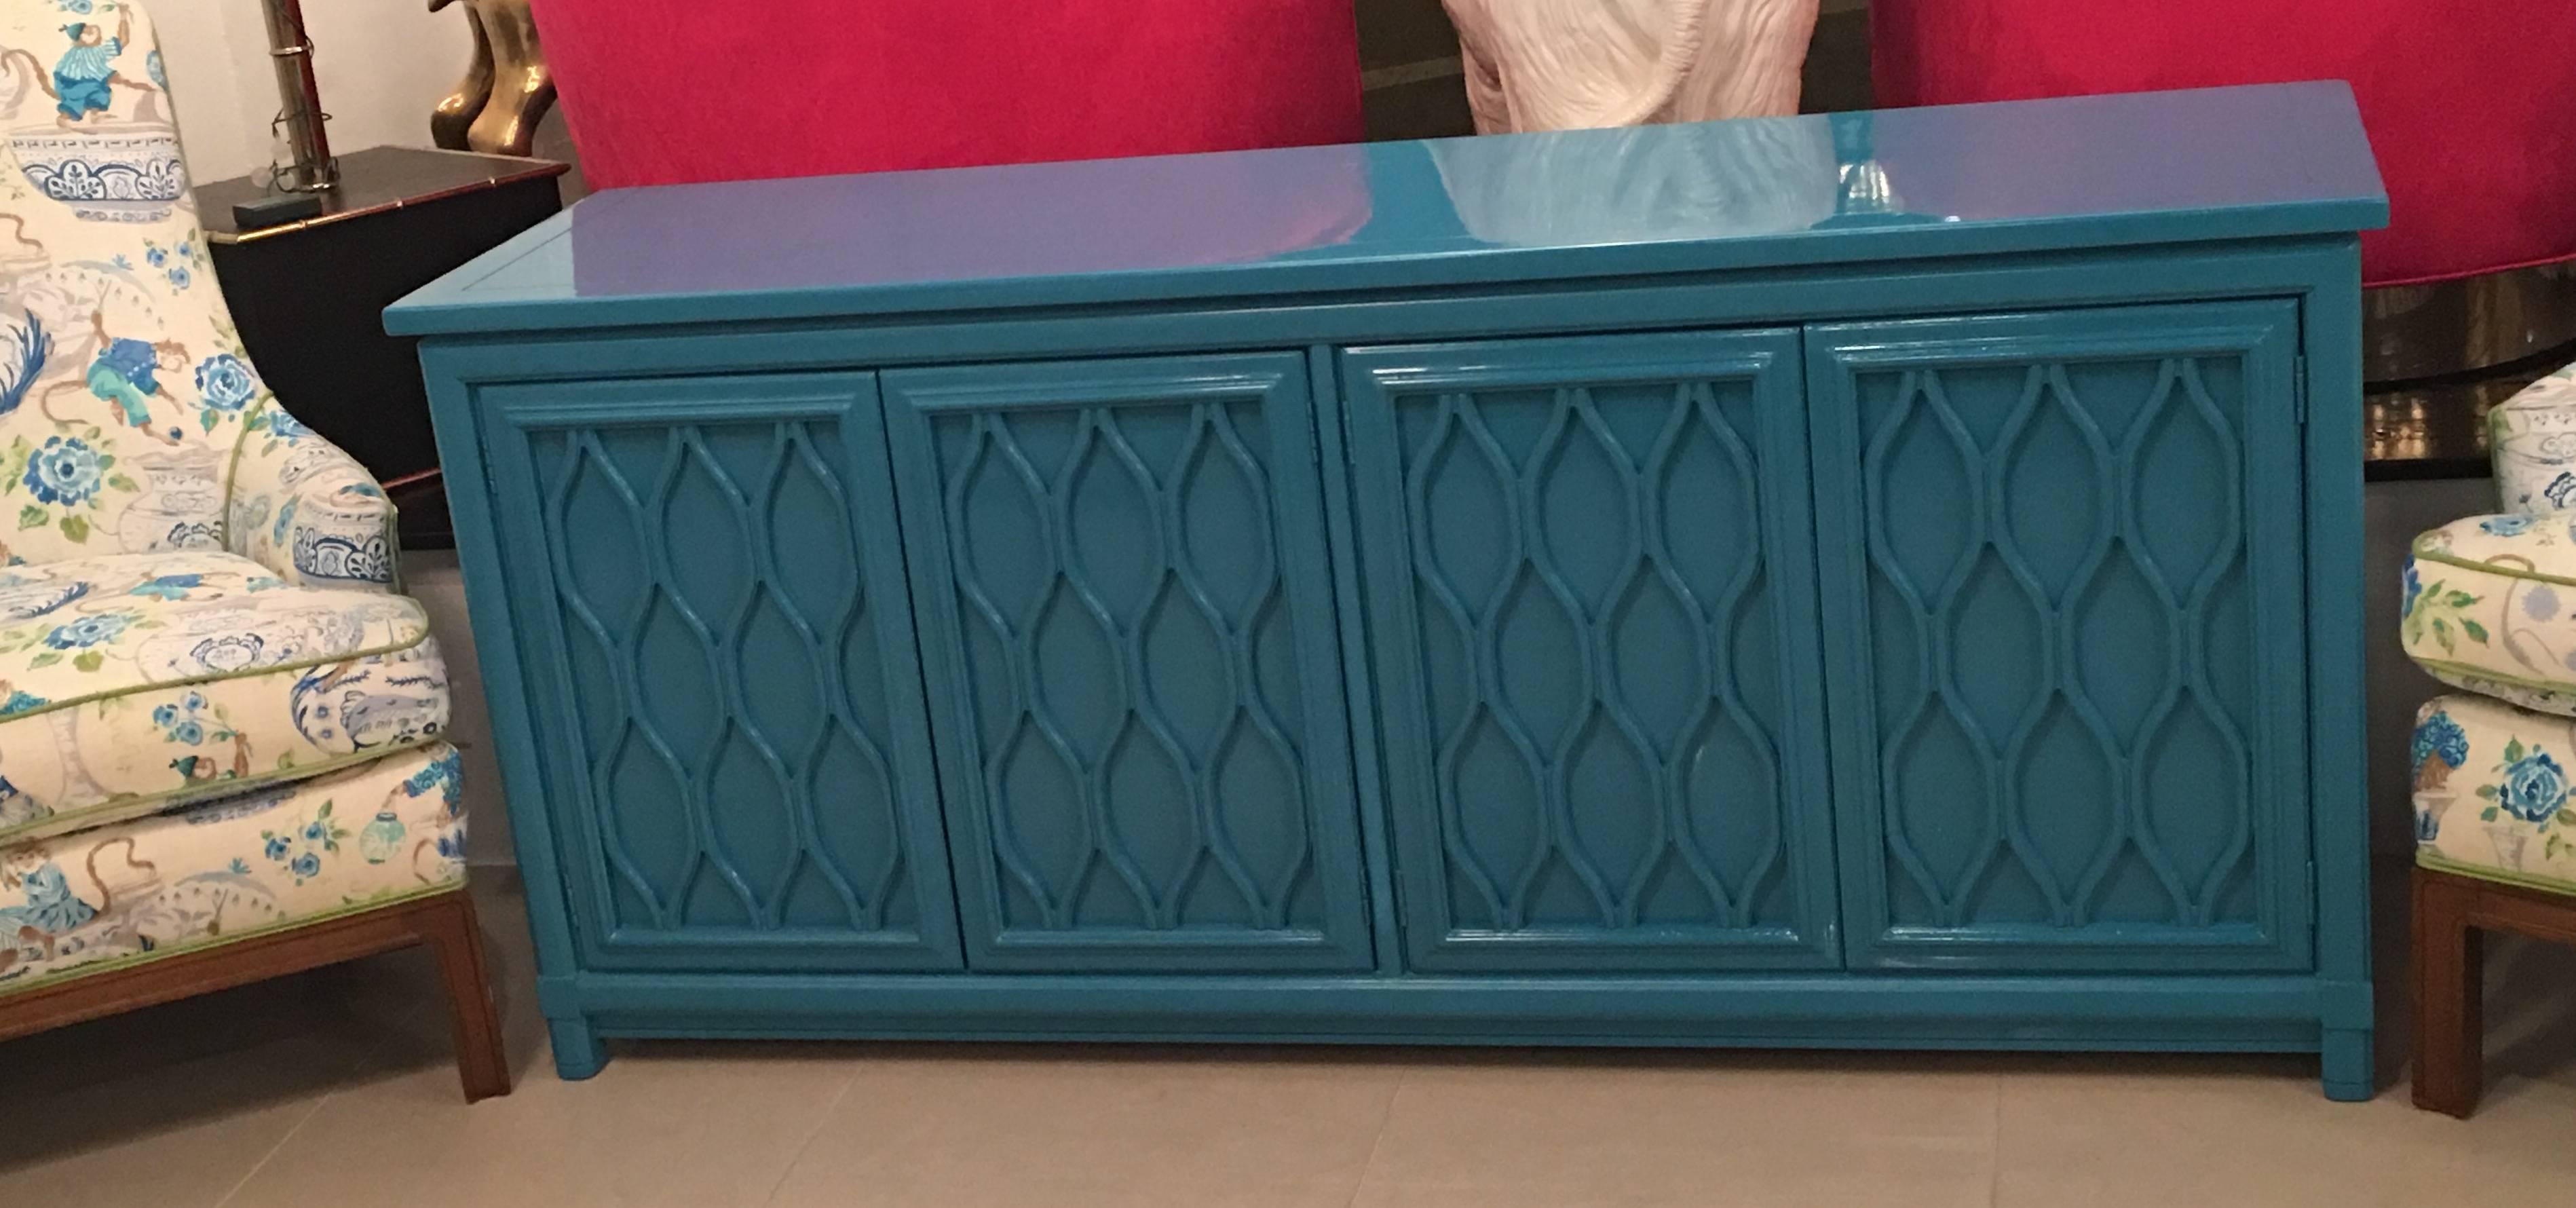 Lacquered Credenza Buffet Sideboard Blue Teal Dresser Hollywood Regency Vintage  1